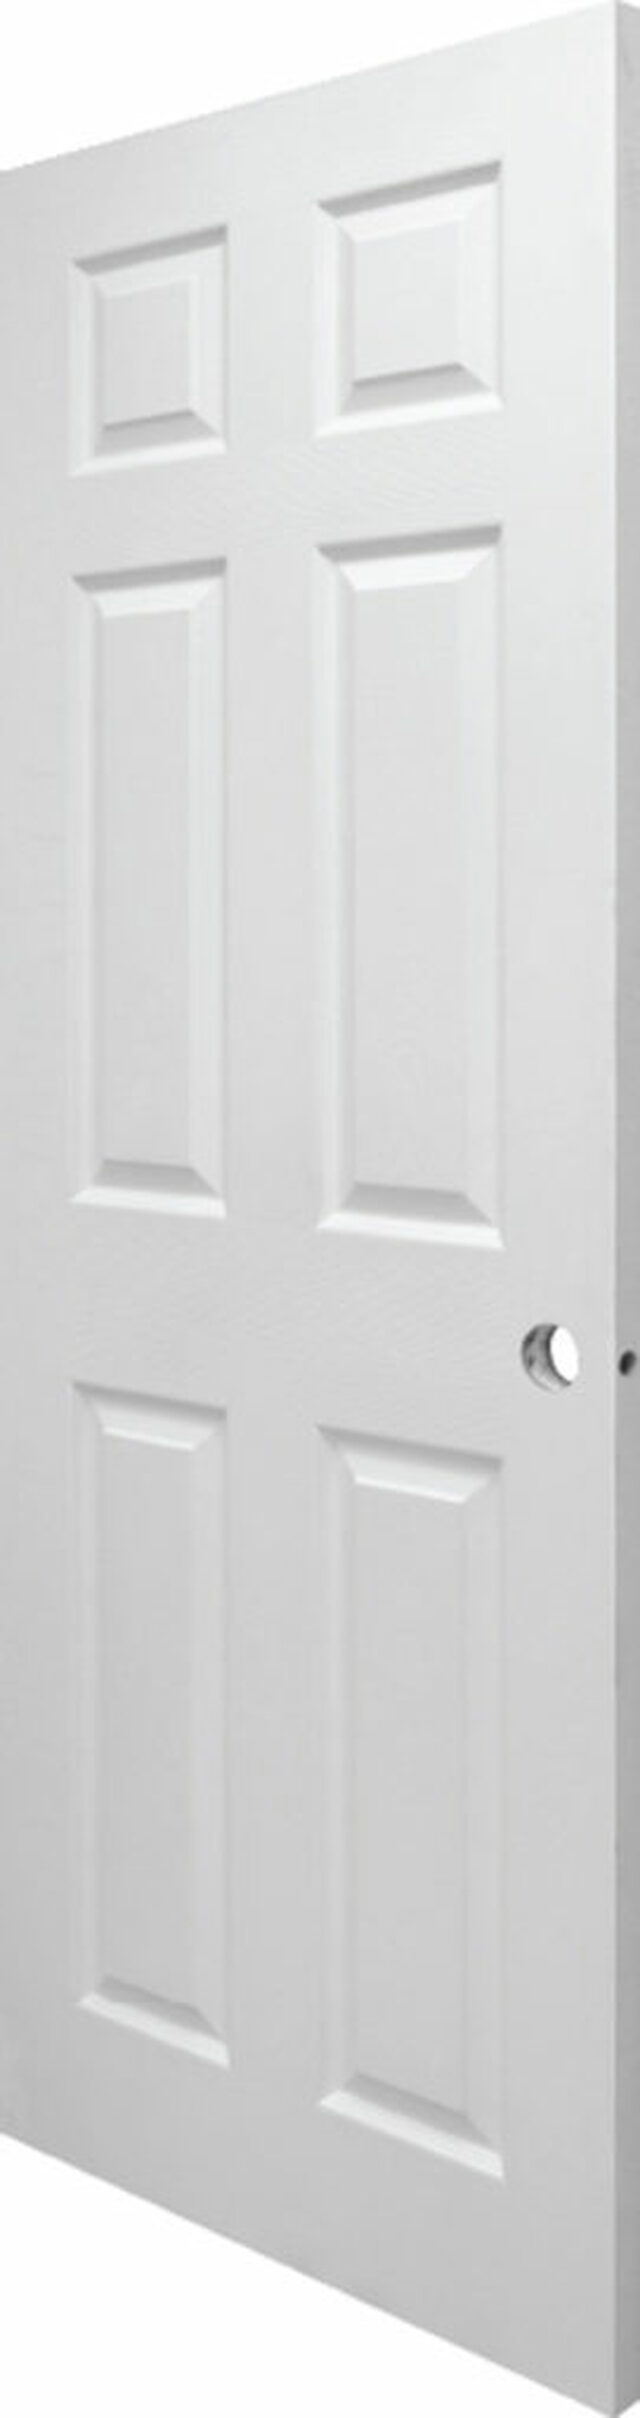 Six Panel Left Hand Solid Core Interior White Door w Handle - (28 x 80)